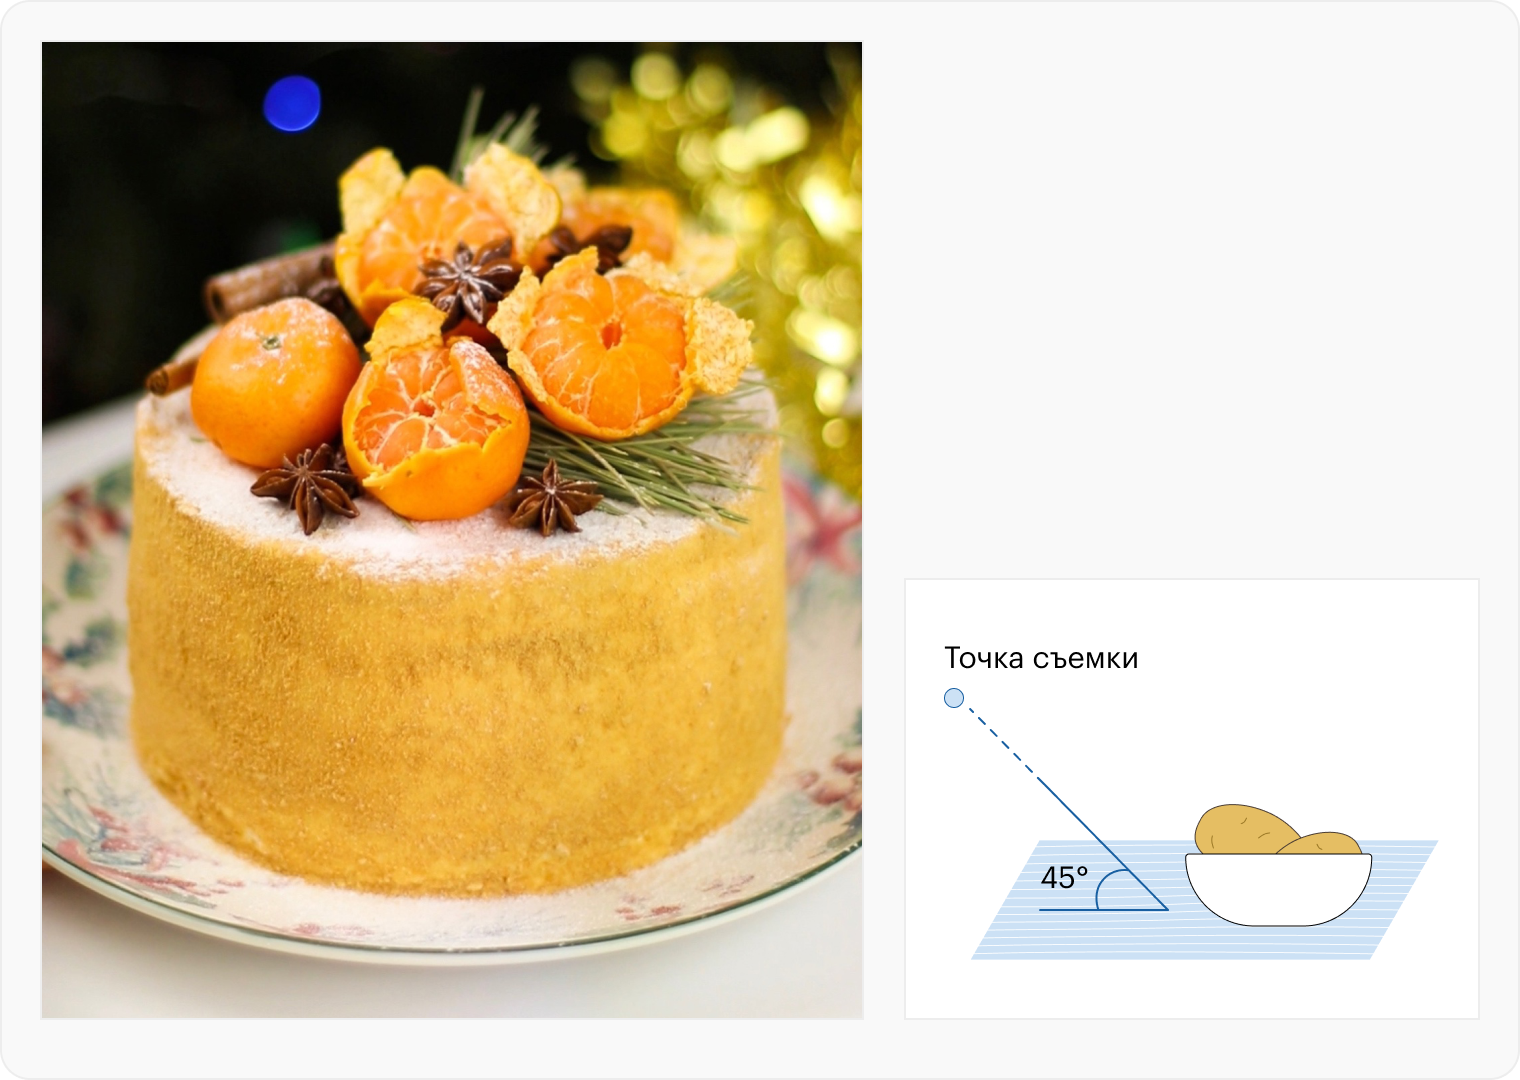 С диагонального ракурса хорошо виден декор на торте, можно рассмотреть дольки мандаринов и специи. Фон я размыла, чтобы он не перетягивал внимание с десерта на себя